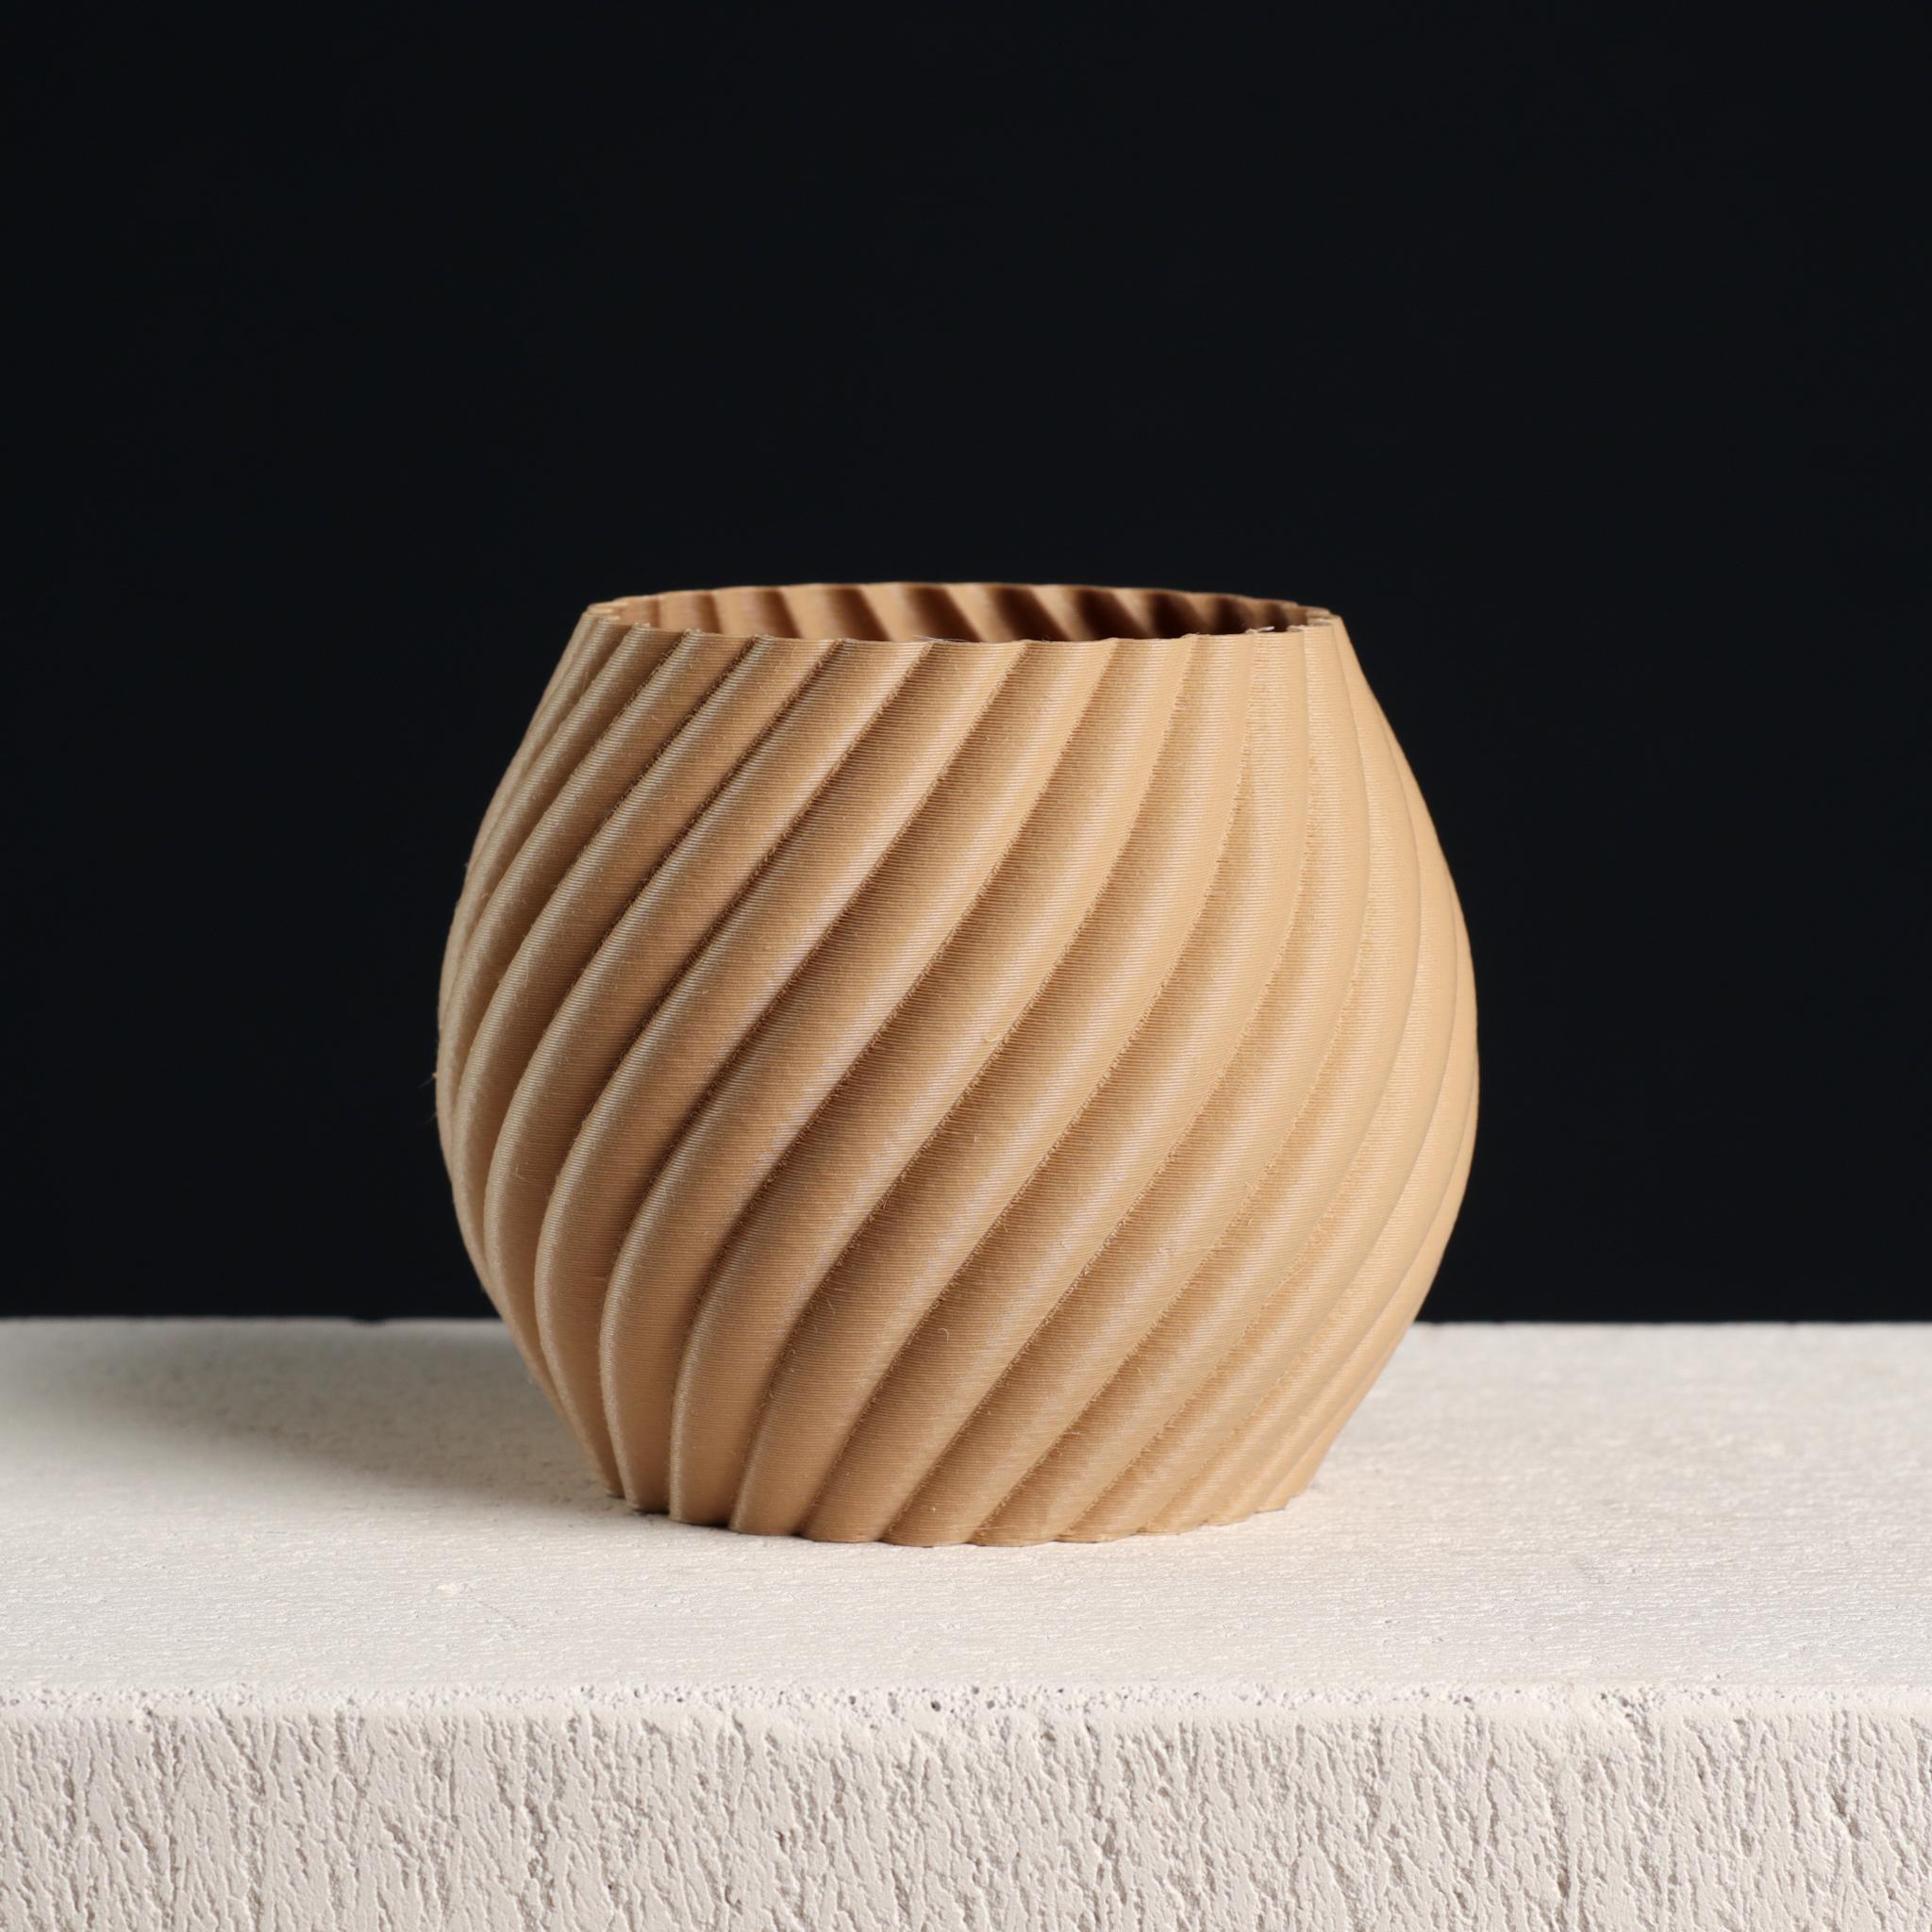  Swirl Sphere Plant Pot, Vase Mode & Shelled  3d model